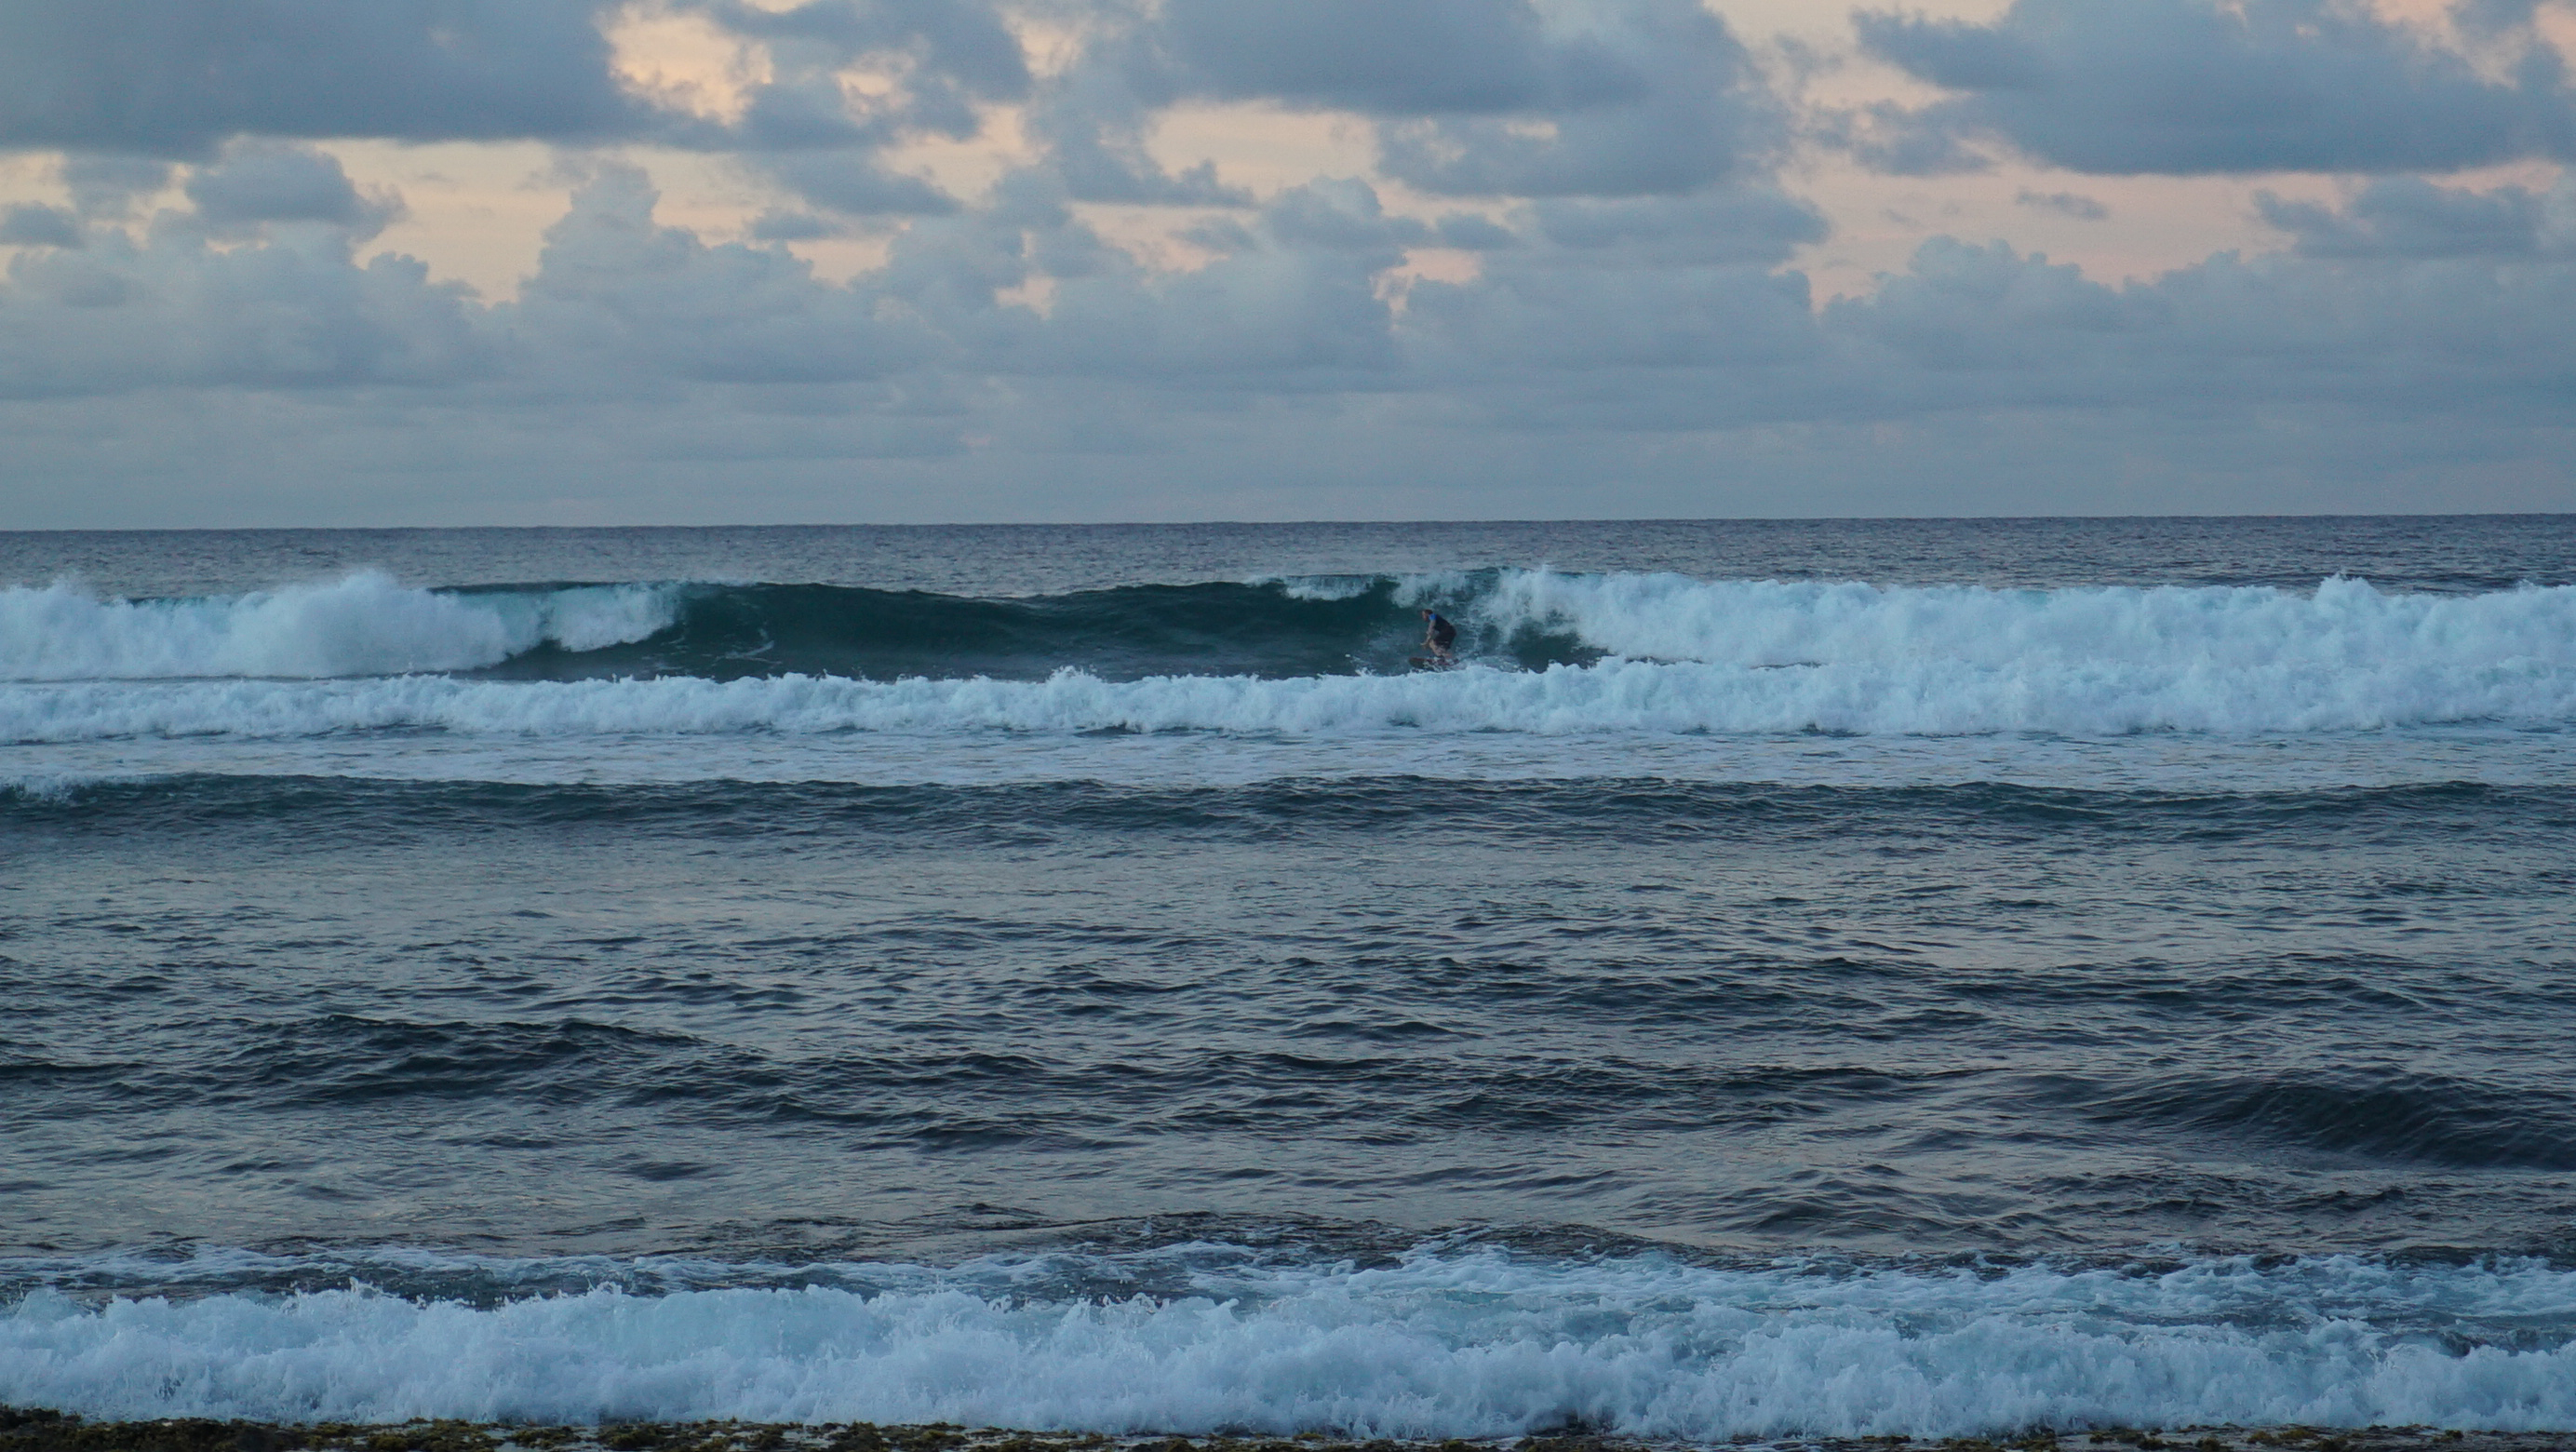 Uusin surffijengin vahvistus, Masa, aalloilla.